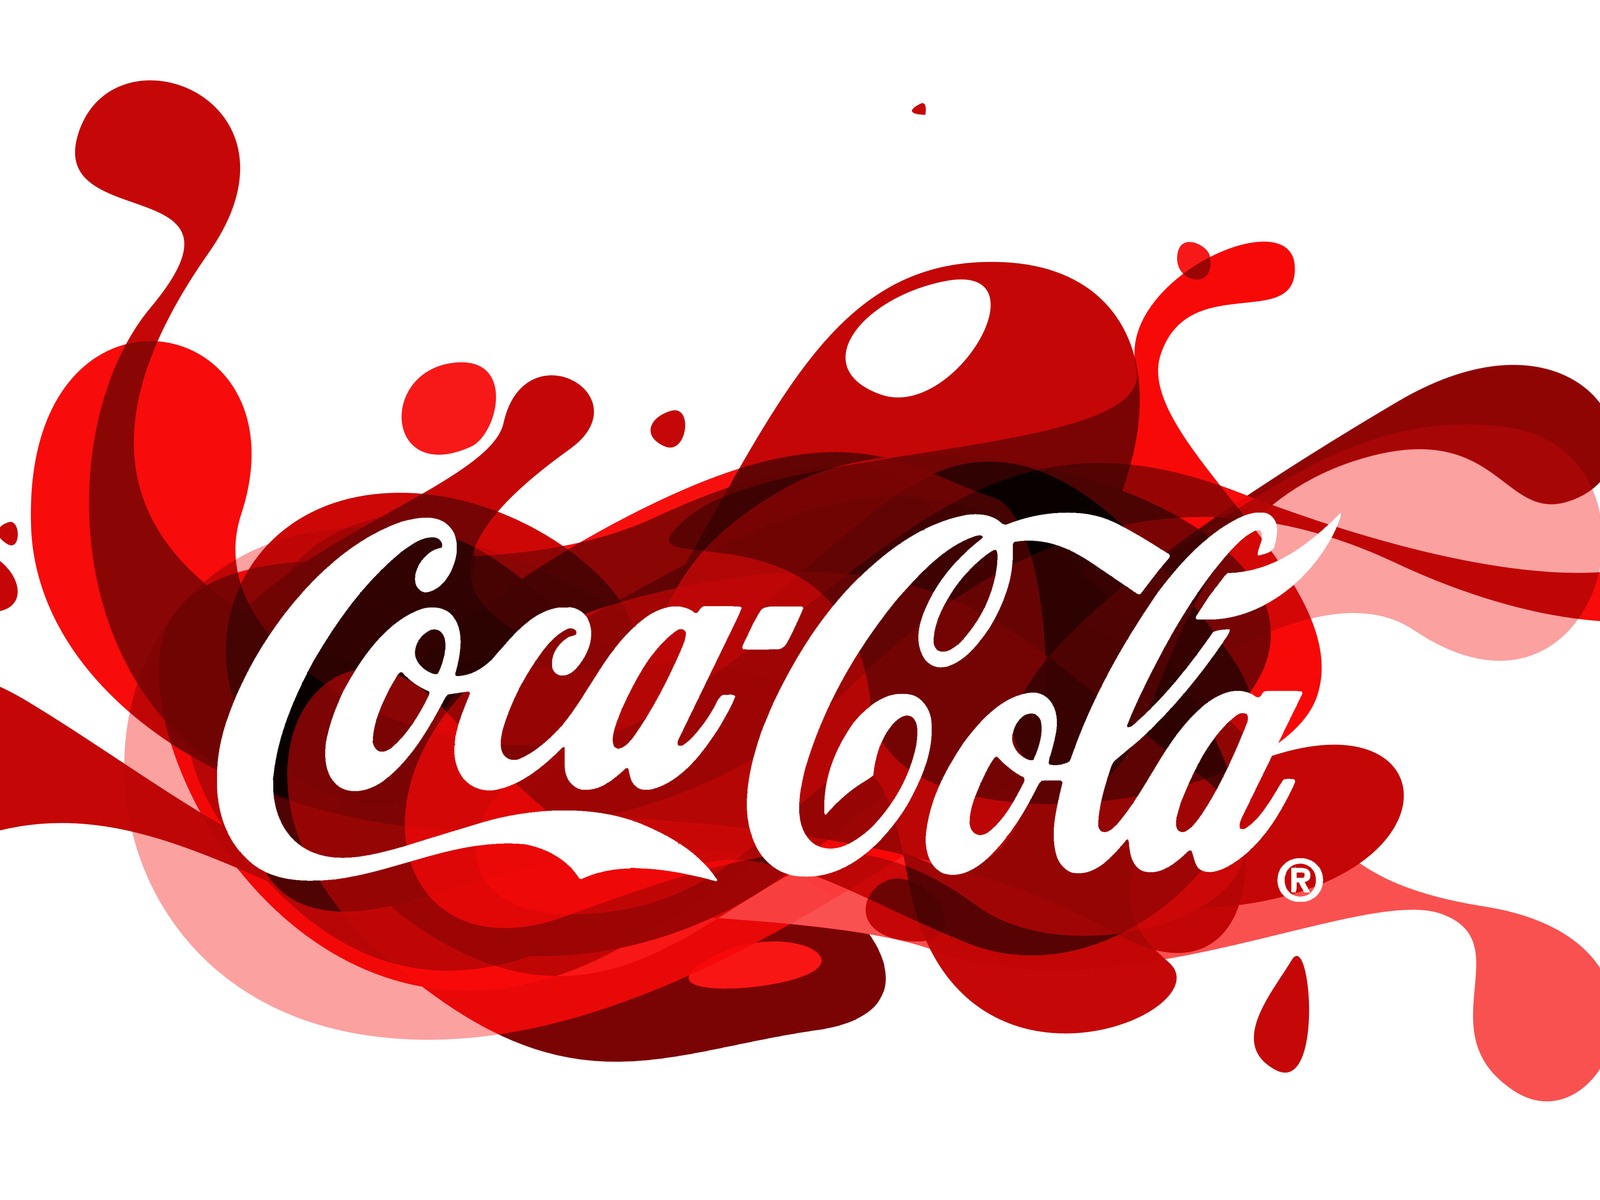 Coca-Cola beautiful ad wallpaper #12 - 1600x1200